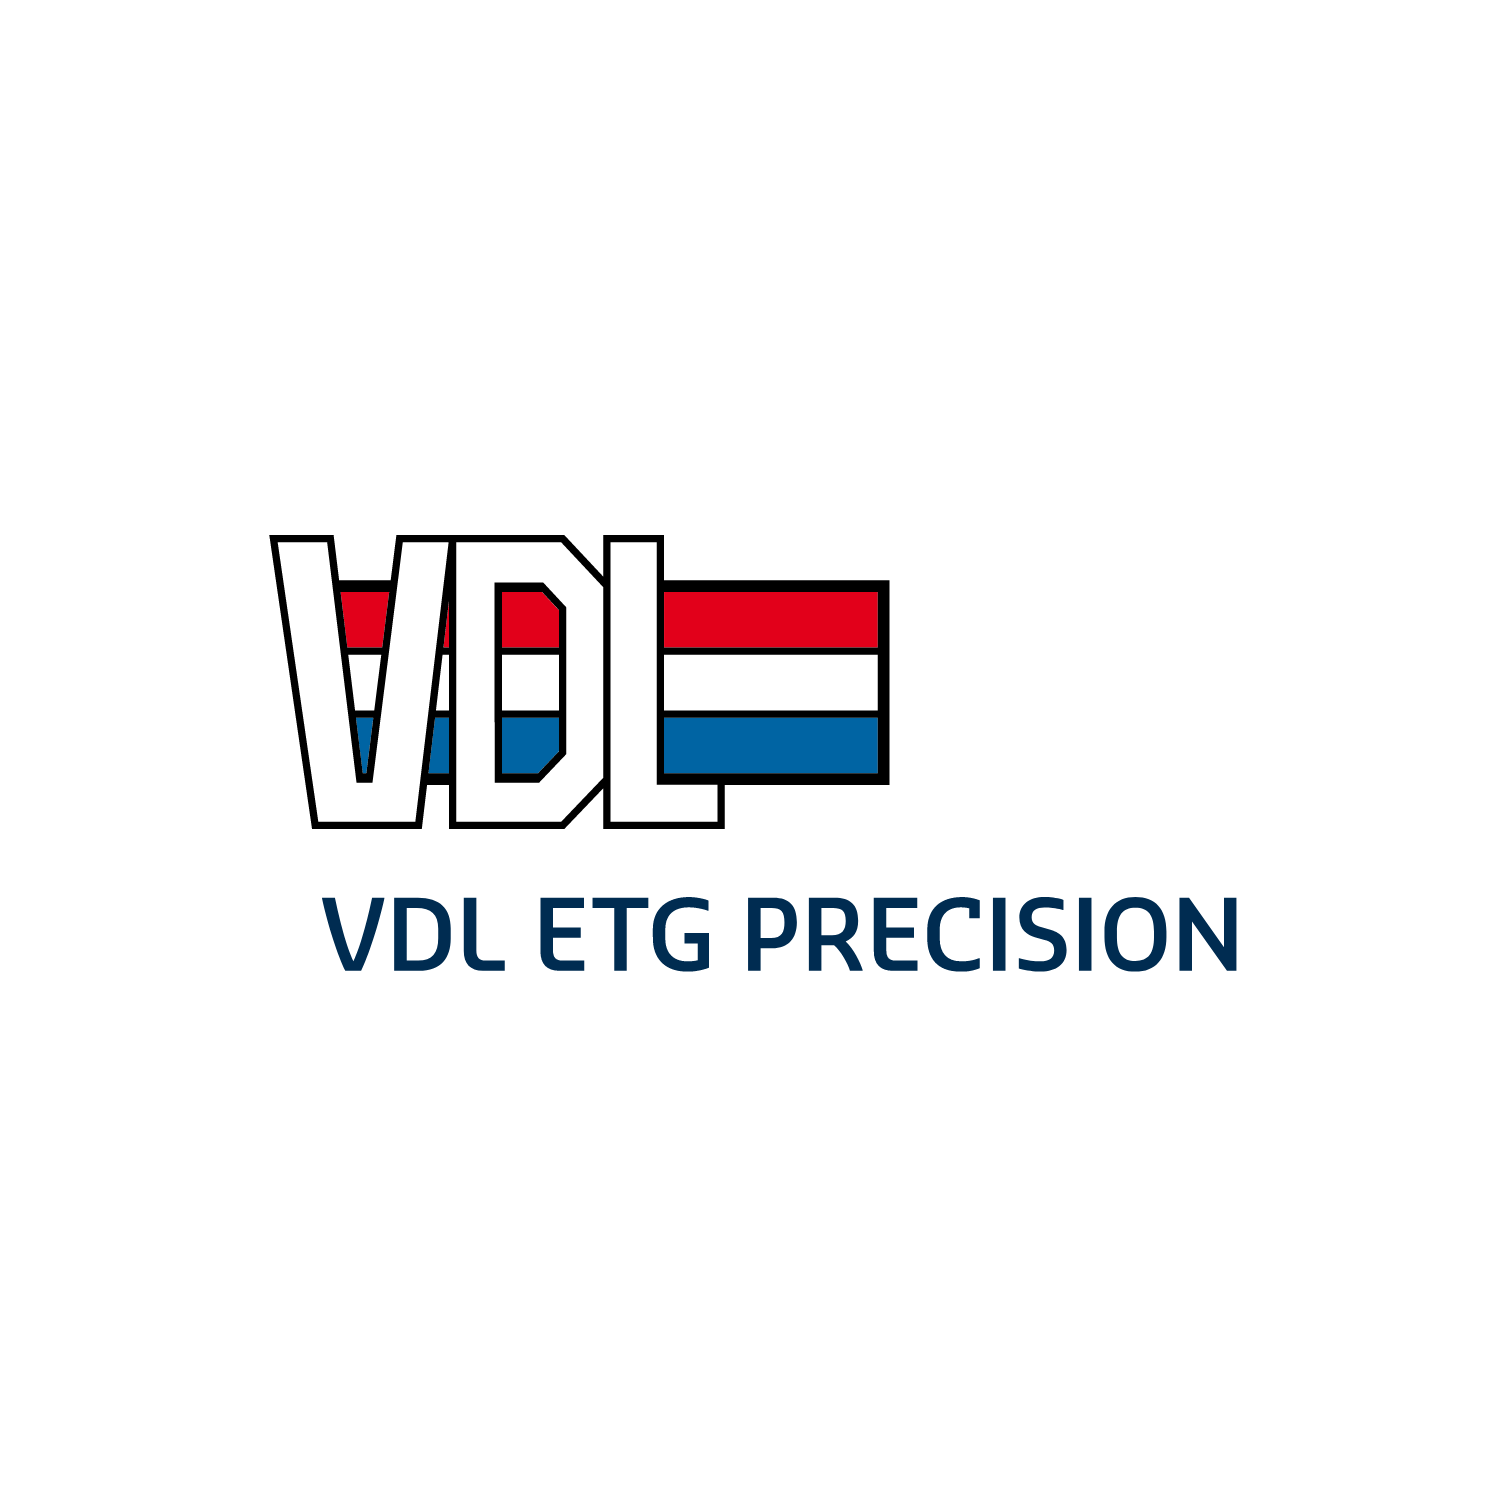 VDL ETG Precision